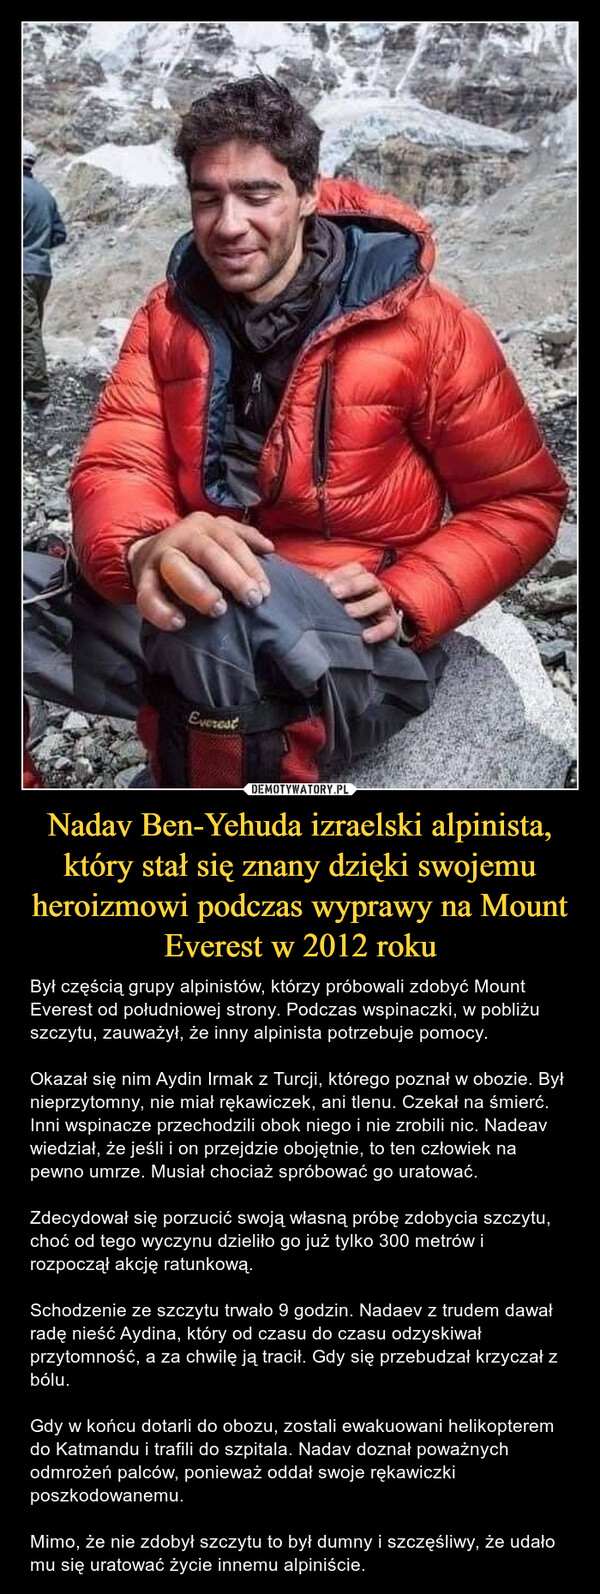 Nadav Ben-Yehuda izraelski alpinista, który stał się znany dzięki swojemu heroizmowi podczas wyprawy na Mount Everest w 2012 roku – Był częścią grupy alpinistów, którzy próbowali zdobyć Mount Everest od południowej strony. Podczas wspinaczki, w pobliżu szczytu, zauważył, że inny alpinista potrzebuje pomocy.Okazał się nim Aydin Irmak z Turcji, którego poznał w obozie. Był nieprzytomny, nie miał rękawiczek, ani tlenu. Czekał na śmierć. Inni wspinacze przechodzili obok niego i nie zrobili nic. Nadeav wiedział, że jeśli i on przejdzie obojętnie, to ten człowiek na pewno umrze. Musiał chociaż spróbować go uratować.Zdecydował się porzucić swoją własną próbę zdobycia szczytu, choć od tego wyczynu dzieliło go już tylko 300 metrów i rozpoczął akcję ratunkową. Schodzenie ze szczytu trwało 9 godzin. Nadaev z trudem dawał radę nieść Aydina, który od czasu do czasu odzyskiwał przytomność, a za chwilę ją tracił. Gdy się przebudzał krzyczał z bólu. Gdy w końcu dotarli do obozu, zostali ewakuowani helikopterem do Katmandu i trafili do szpitala. Nadav doznał poważnych odmrożeń palców, ponieważ oddał swoje rękawiczki poszkodowanemu. Mimo, że nie zdobył szczytu to był dumny i szczęśliwy, że udało mu się uratować życie innemu alpiniście. 